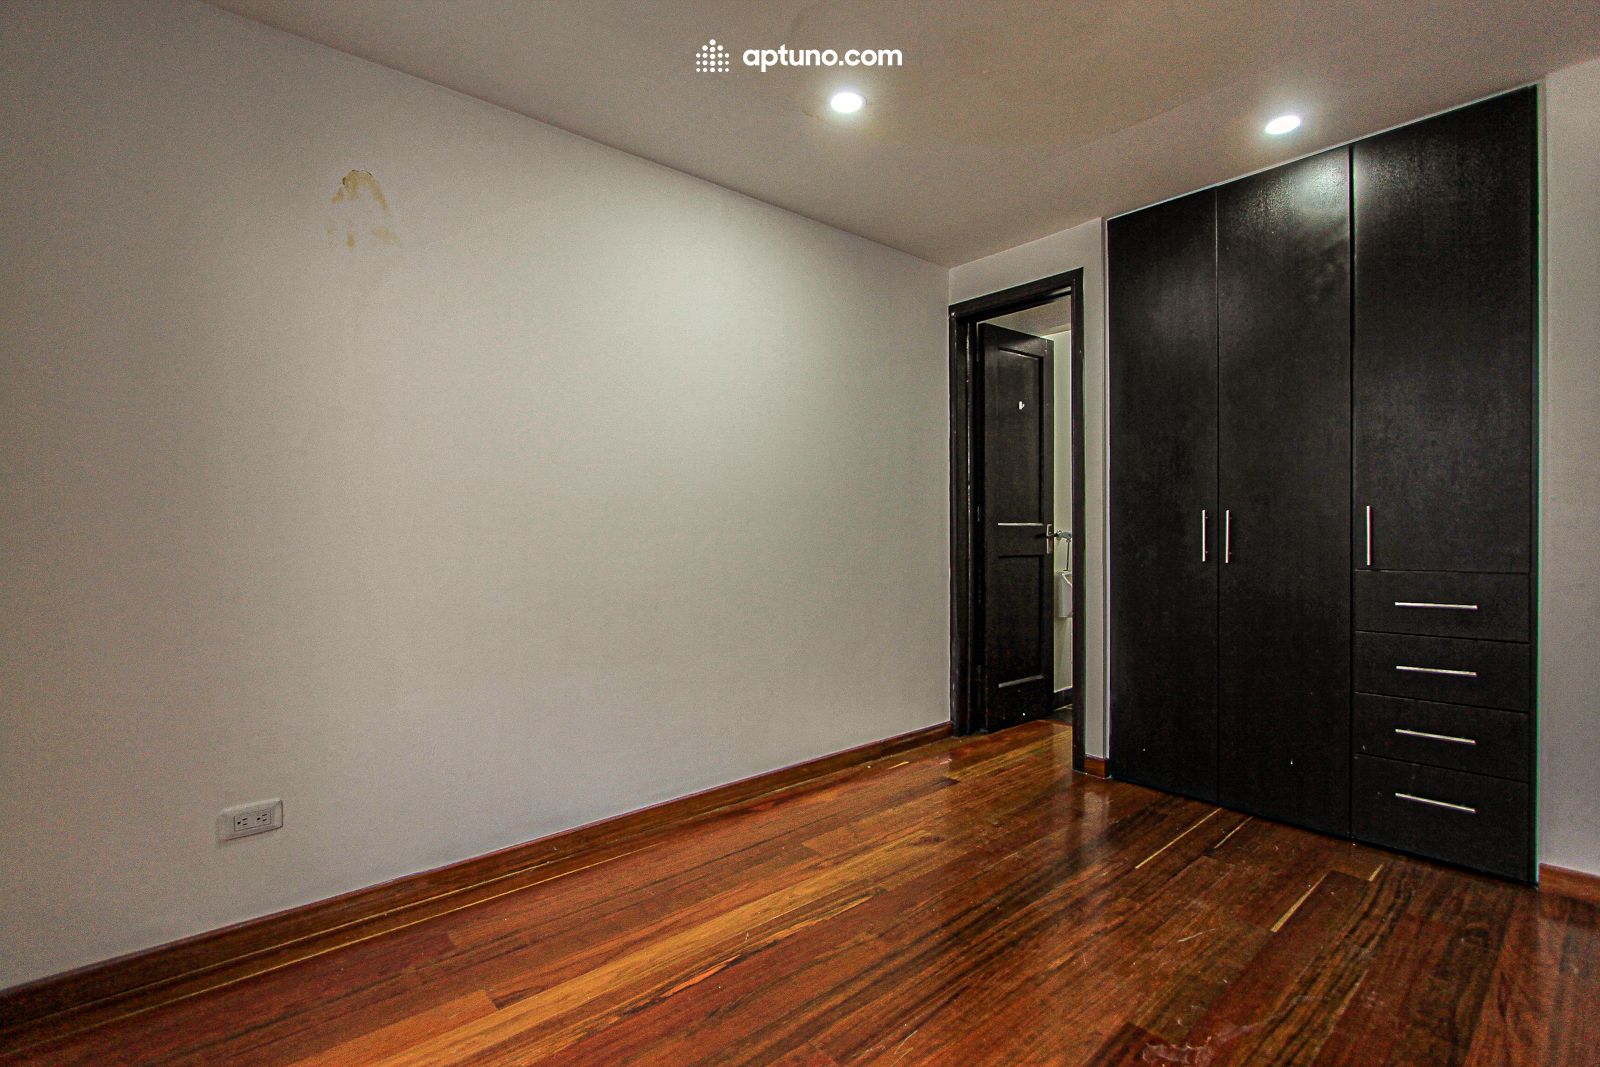 Apartamento en arriendo Quinta Camacho 25 m² - $ 1.000.000